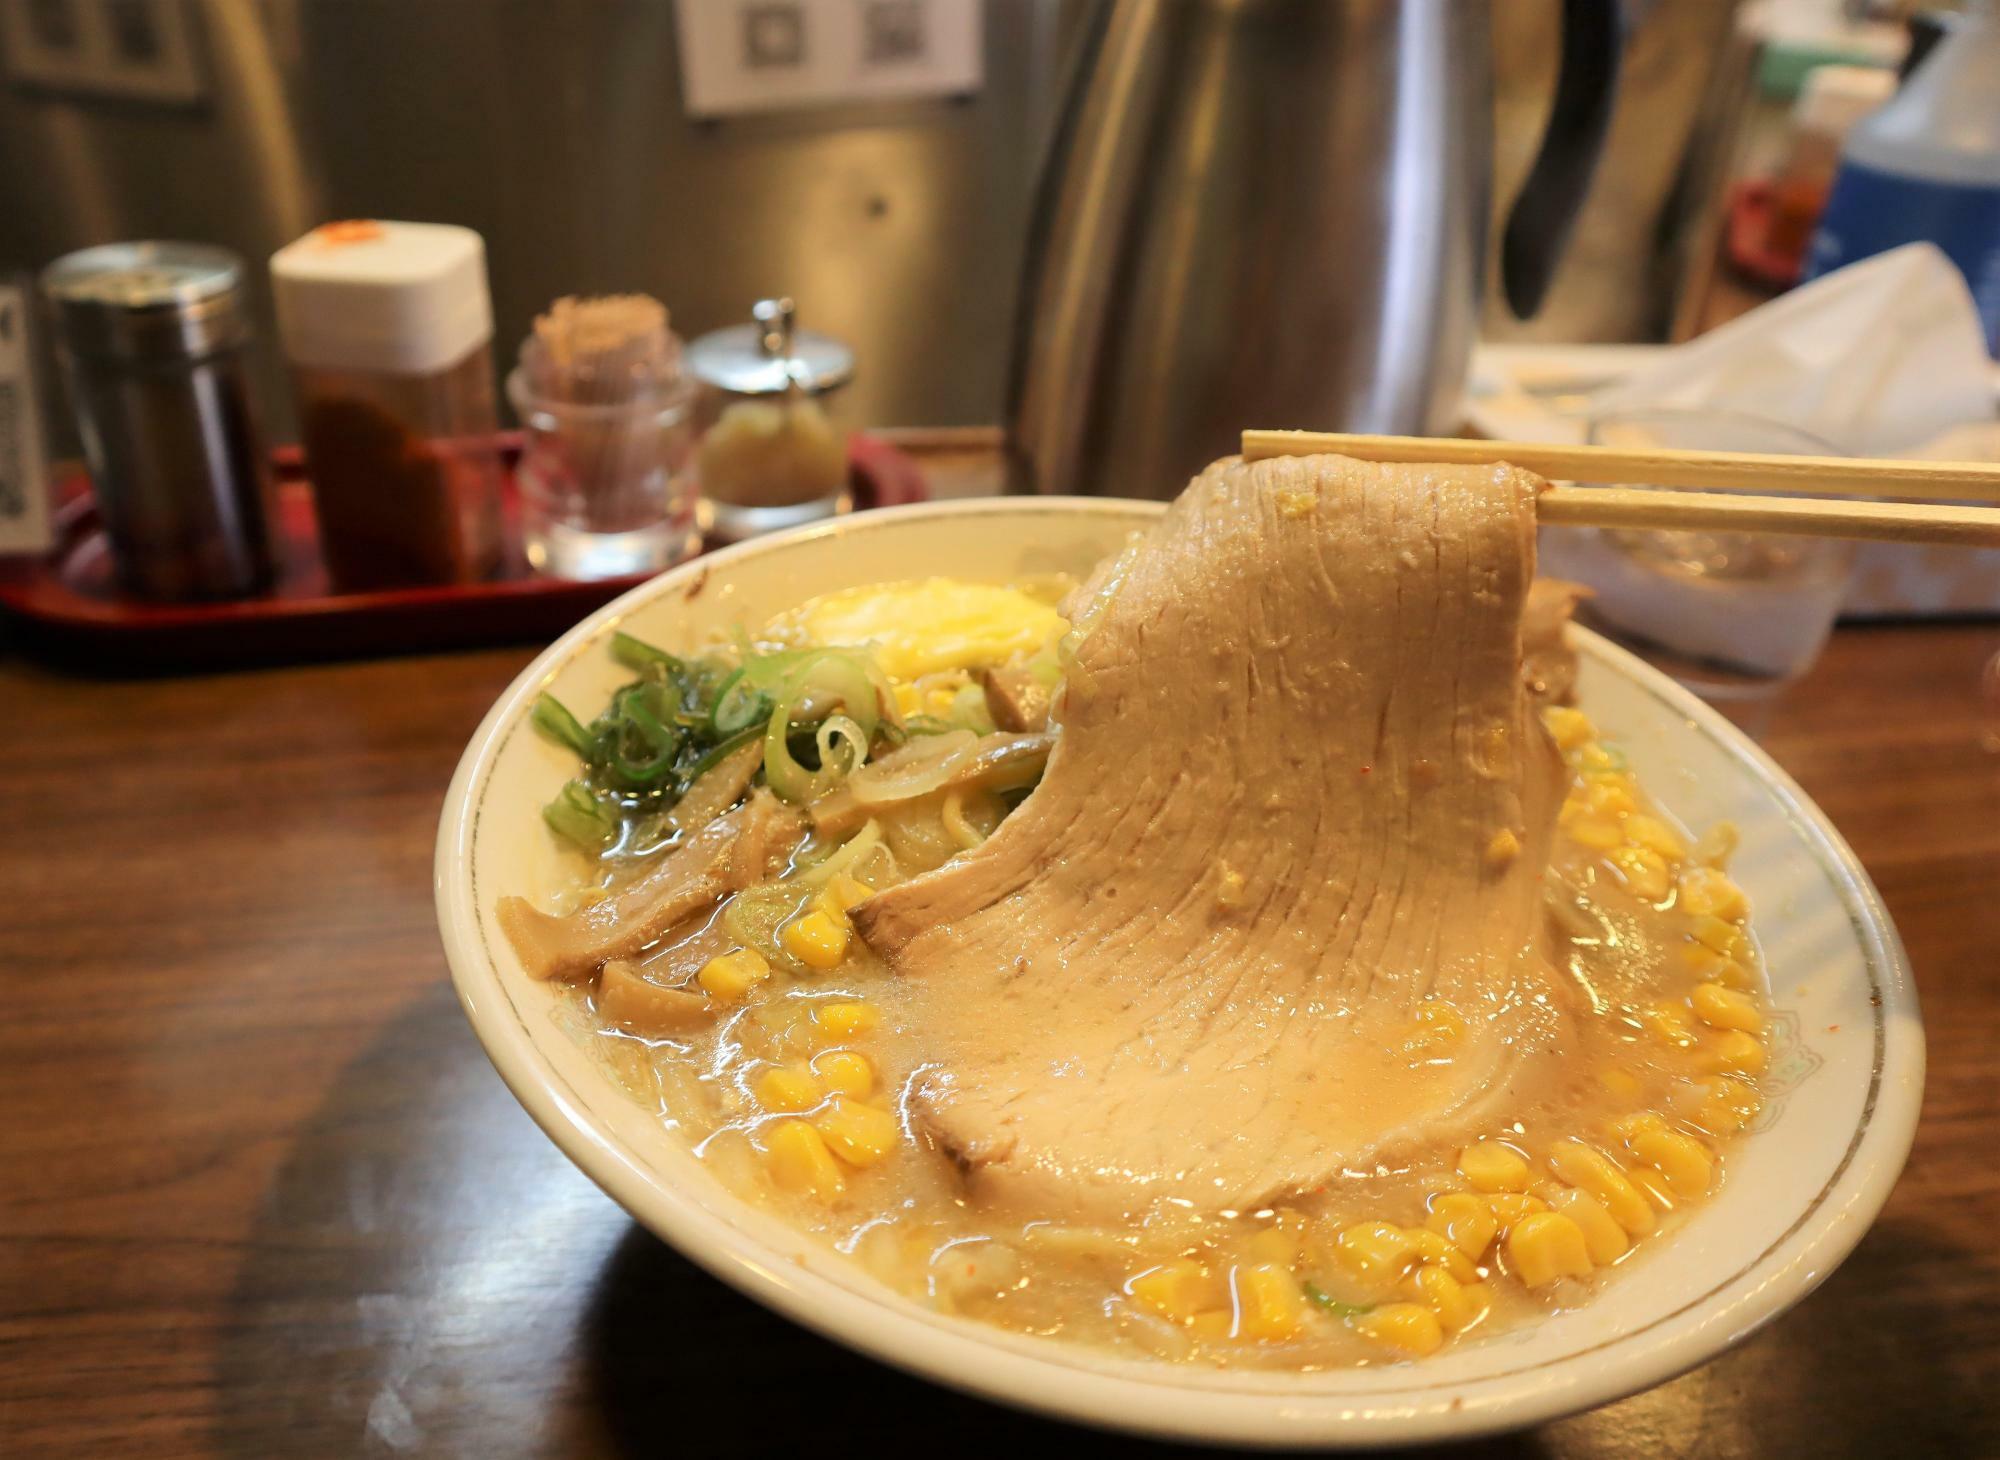 札幌ラーメンには挽肉を使用するそうです。今は、代わりに豚チャーシューを入れているそうです。